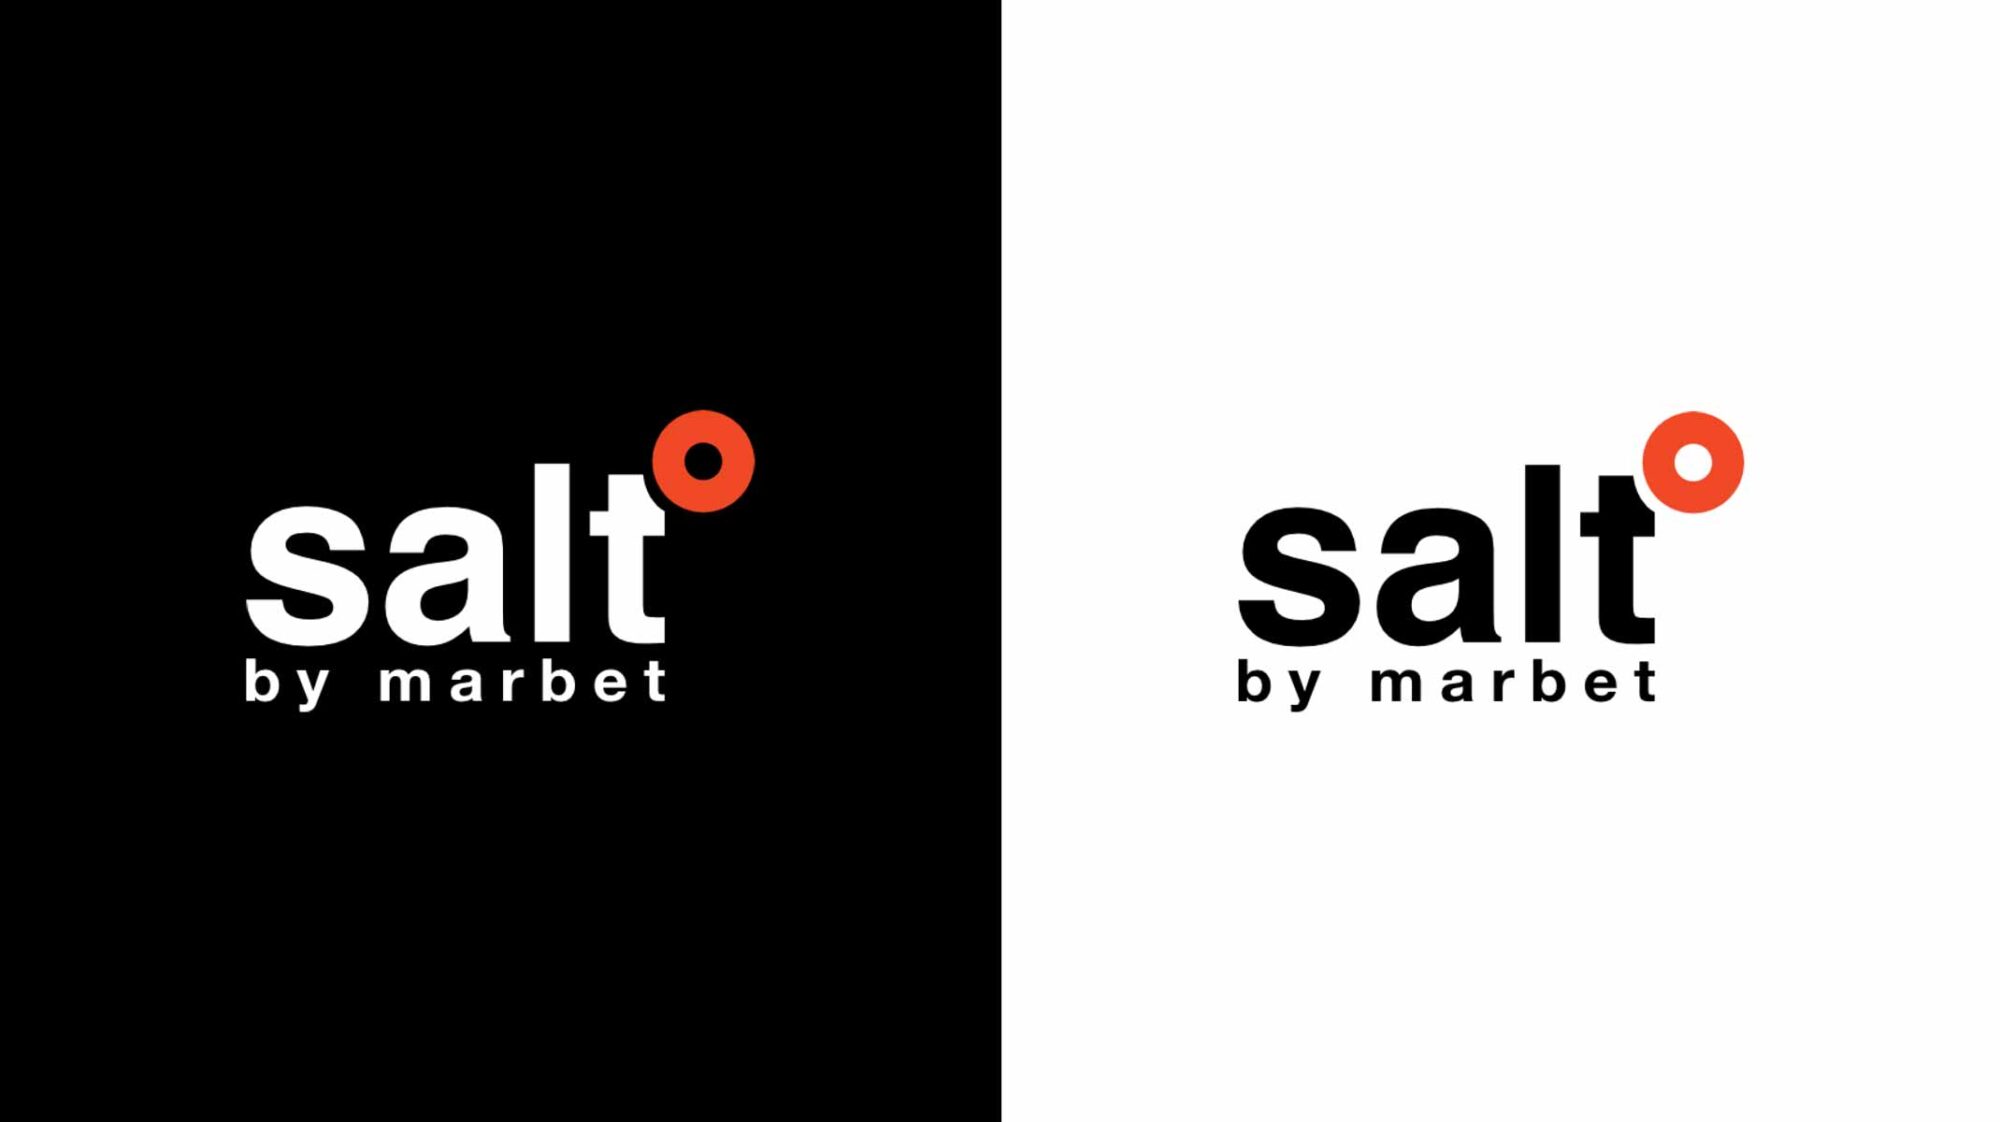 Studierendenarbeit Branding für die Untermarke Salt by marbet – Logoentwurf